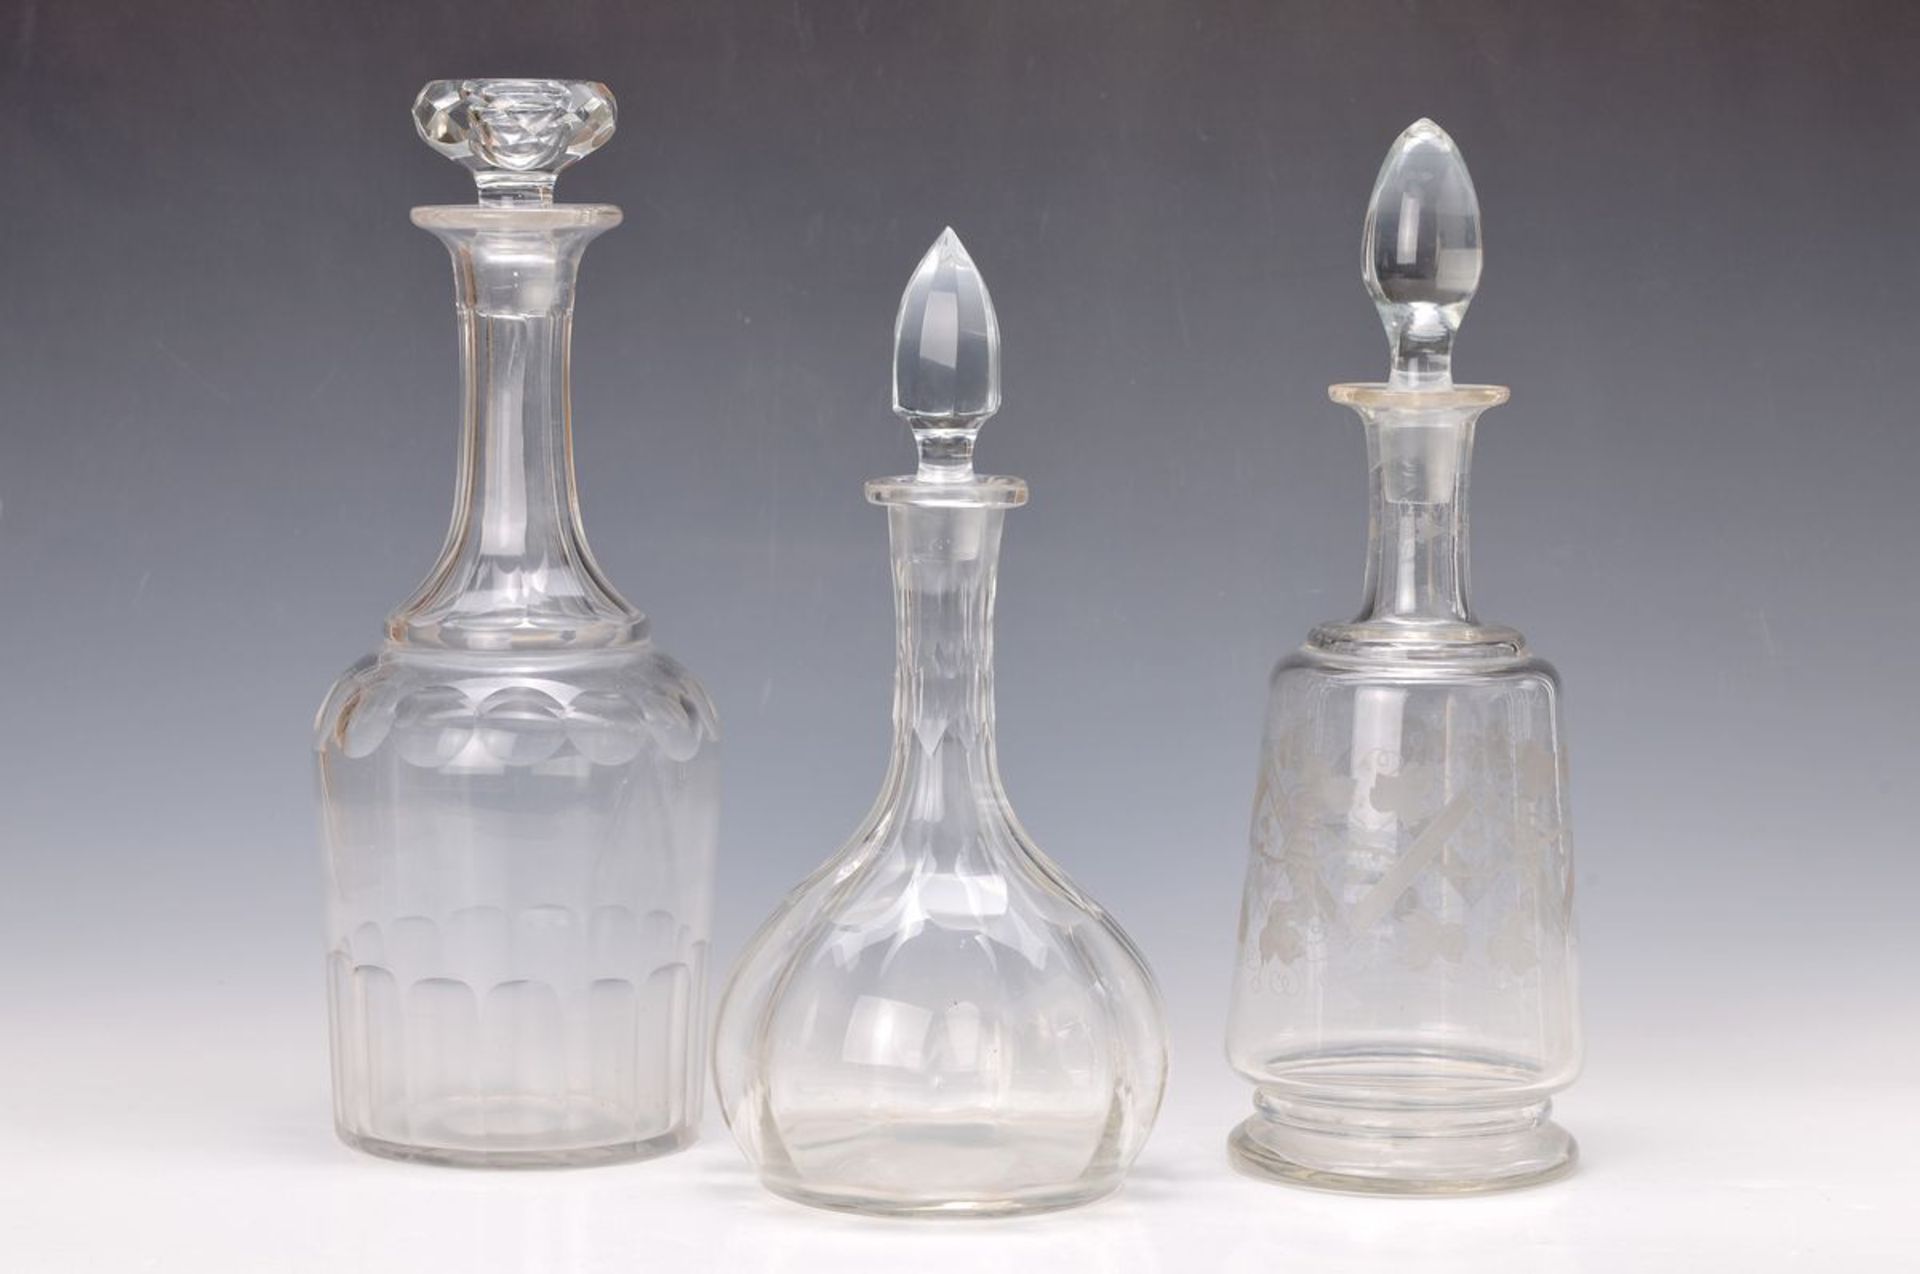 Drei Glaskaraffen, deutsch, um, 1860-1900, farbloses Glas, mit Schälschliff, H. 30-34 cmthree